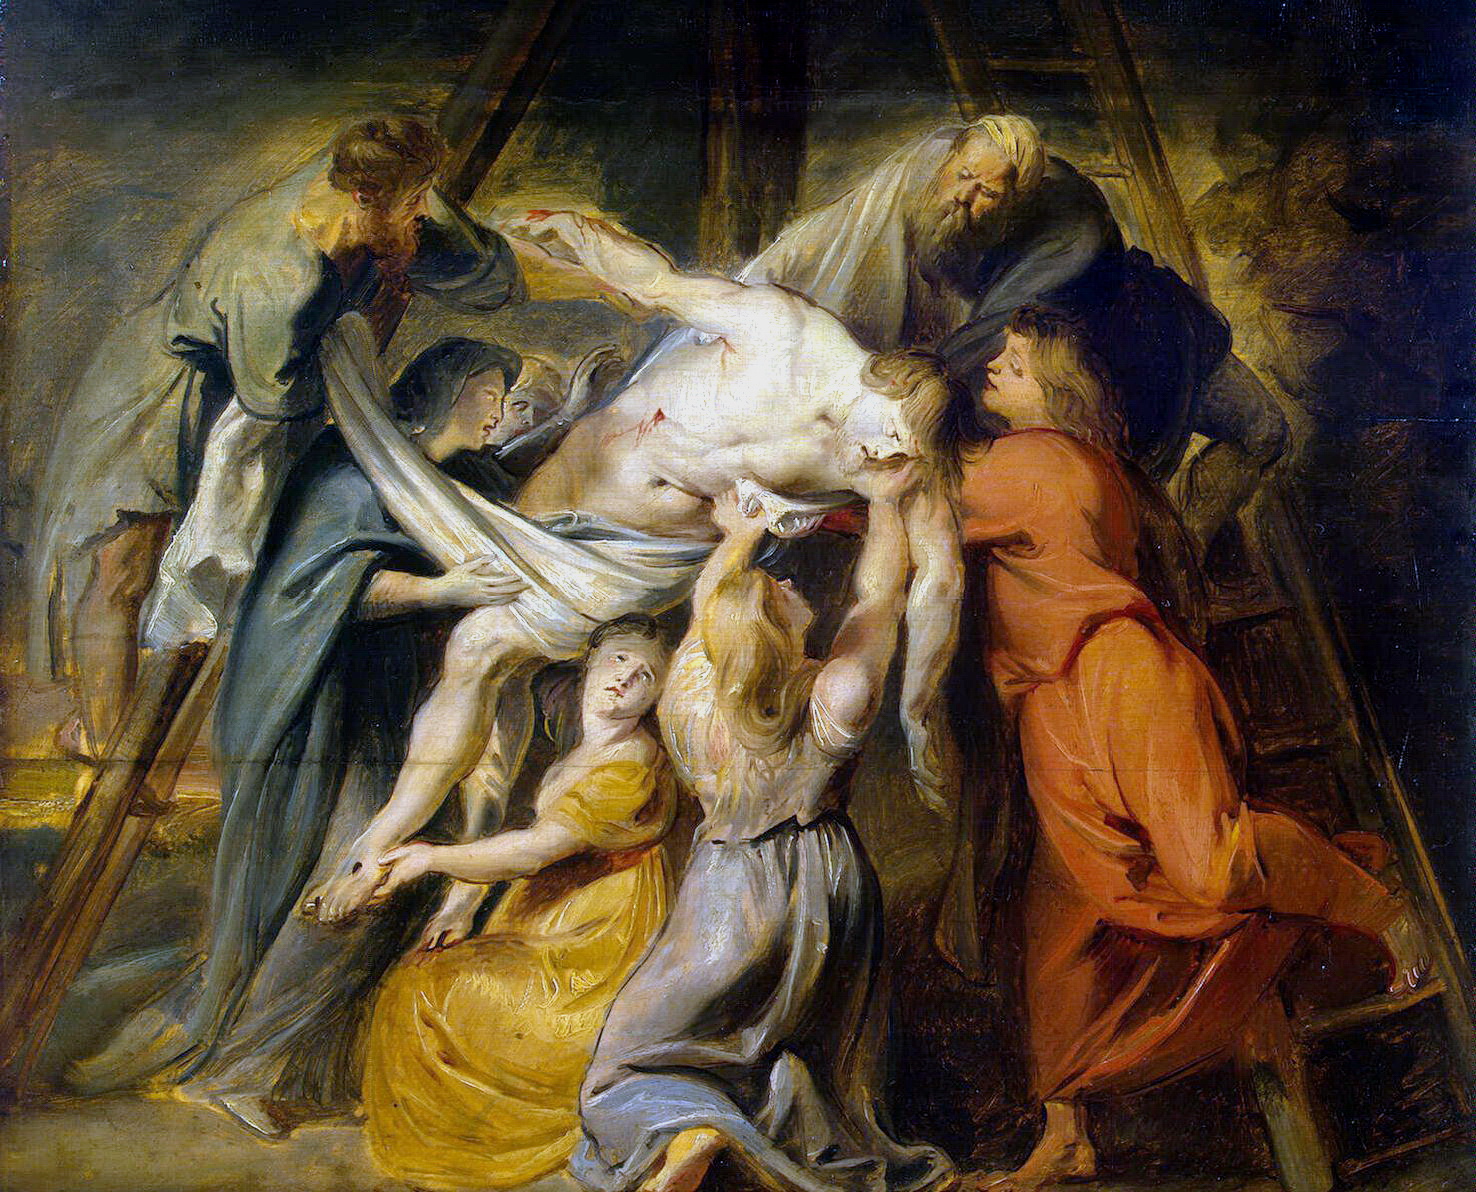 Питер Пауль Рубенс. "Снятие с креста". 1611-1612. Эрмитаж, Санкт-Петербург.